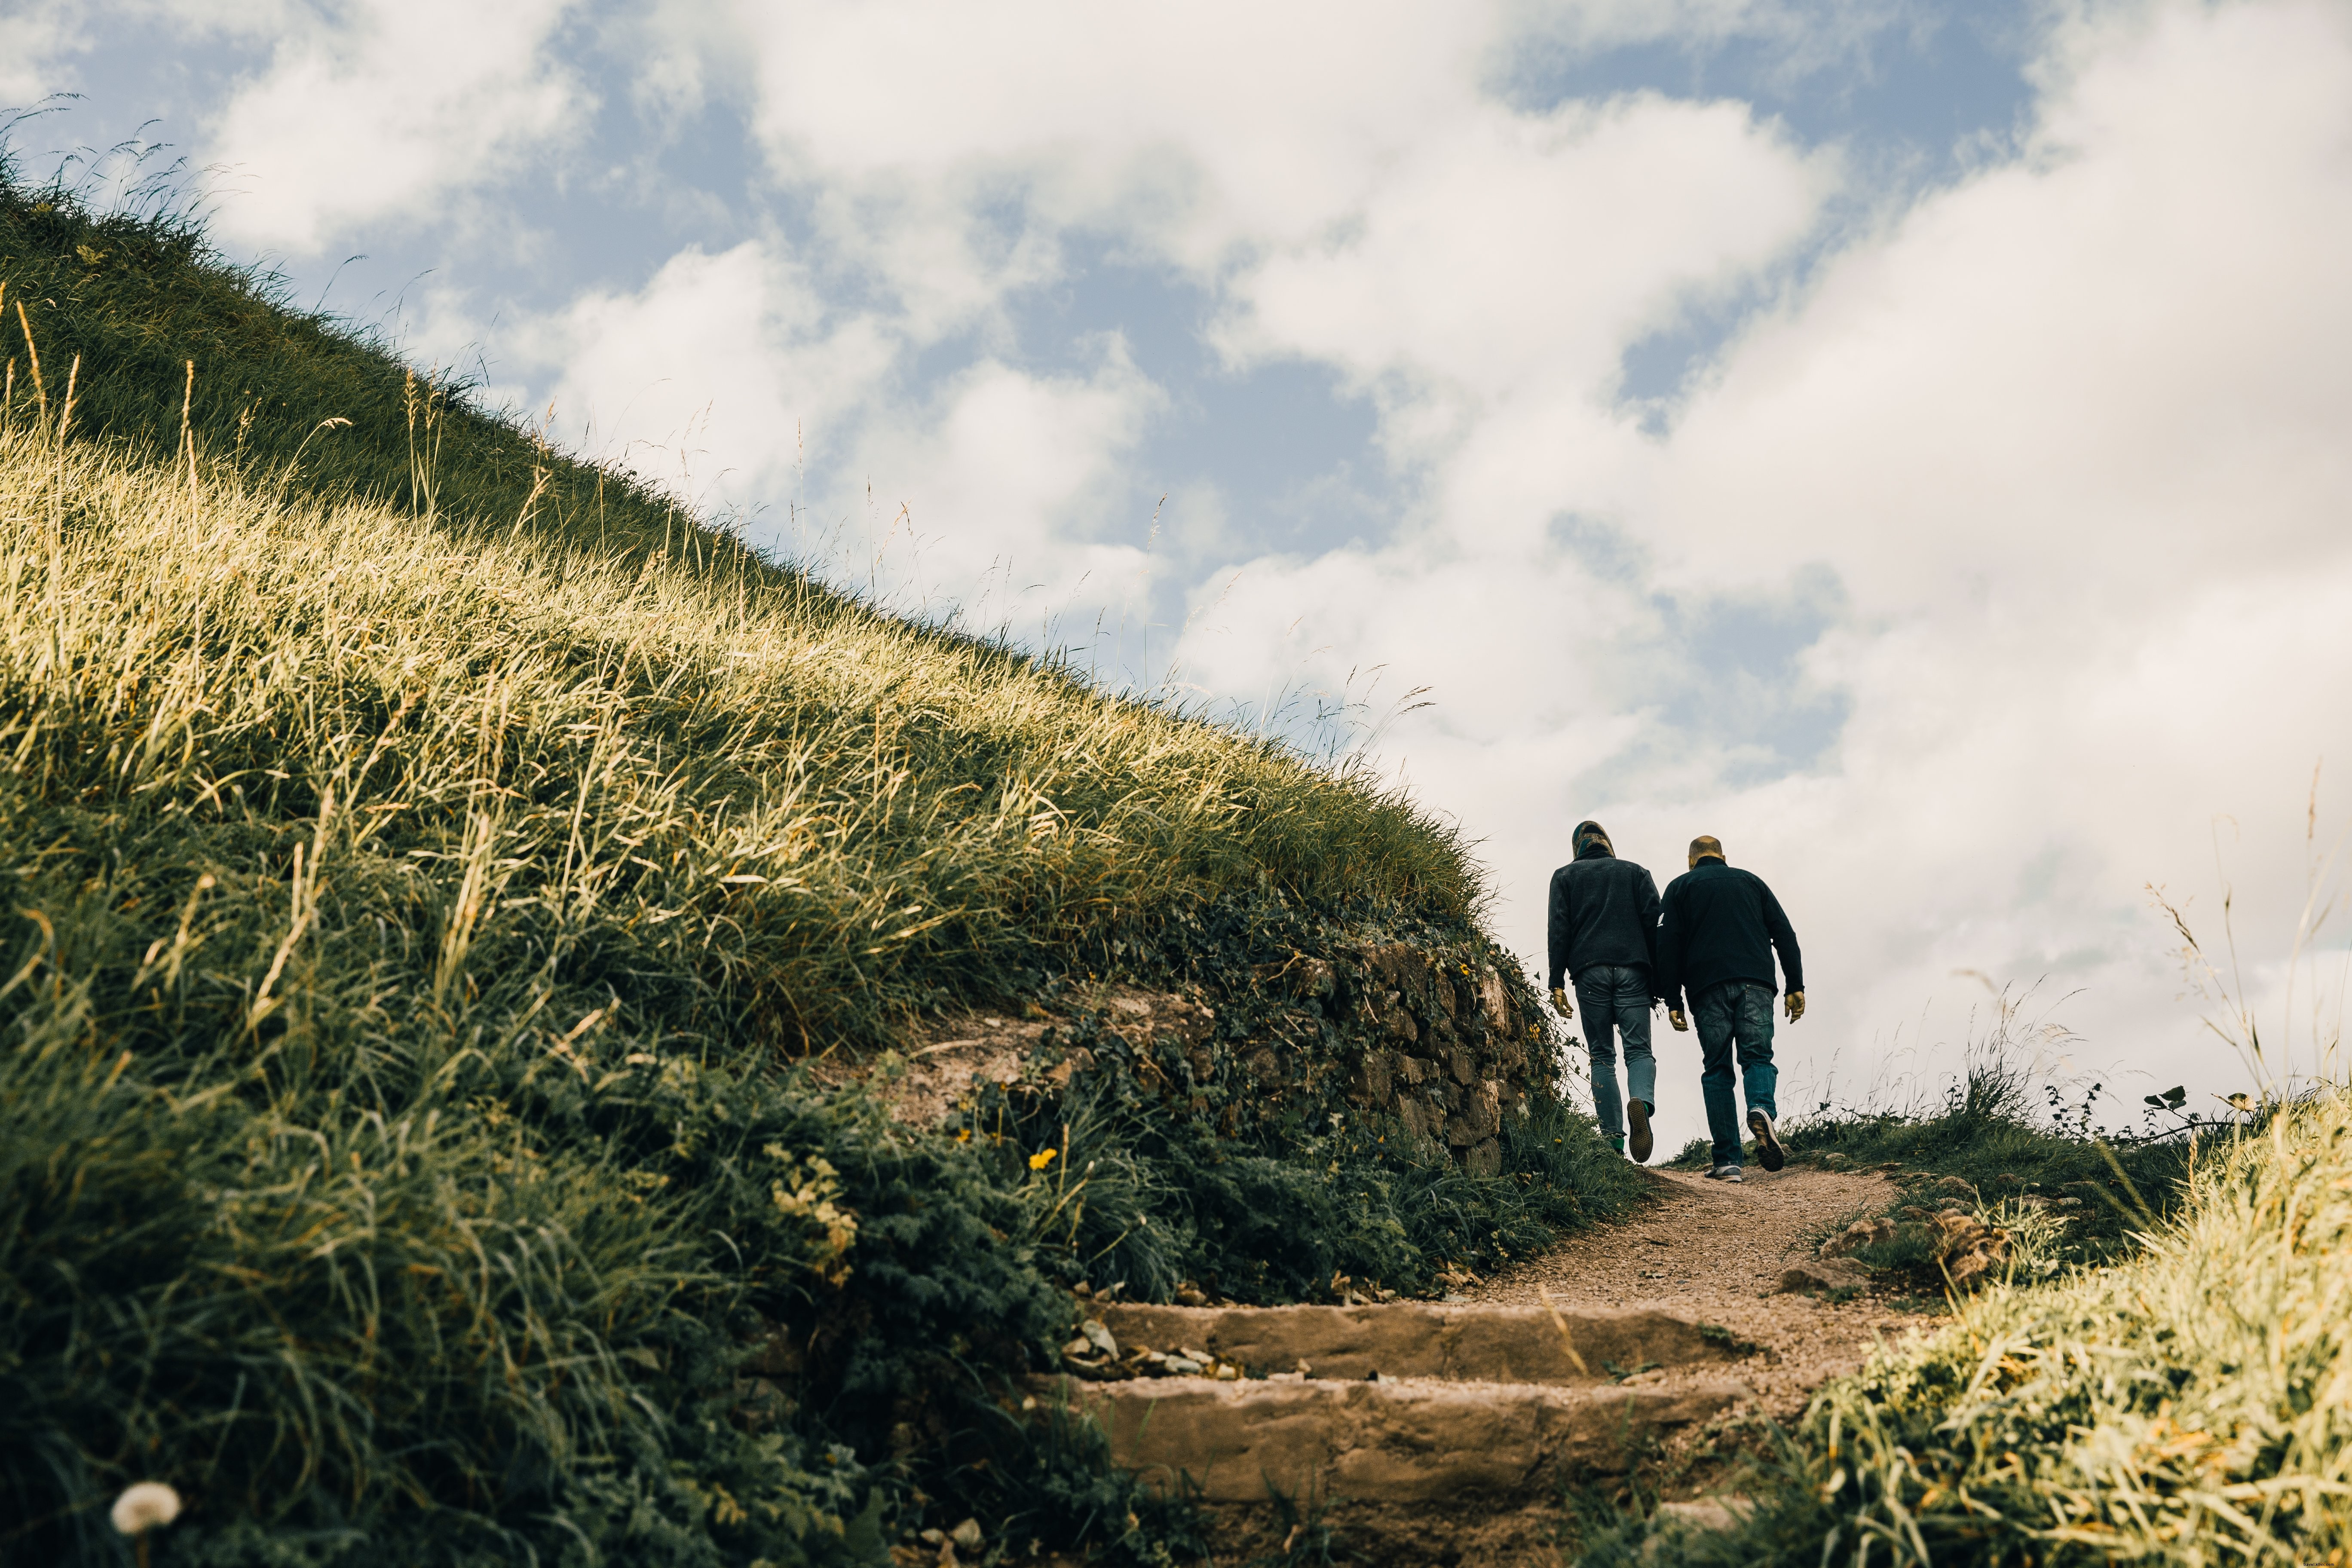 Foto de homens caminhando nas colinas gramíneas